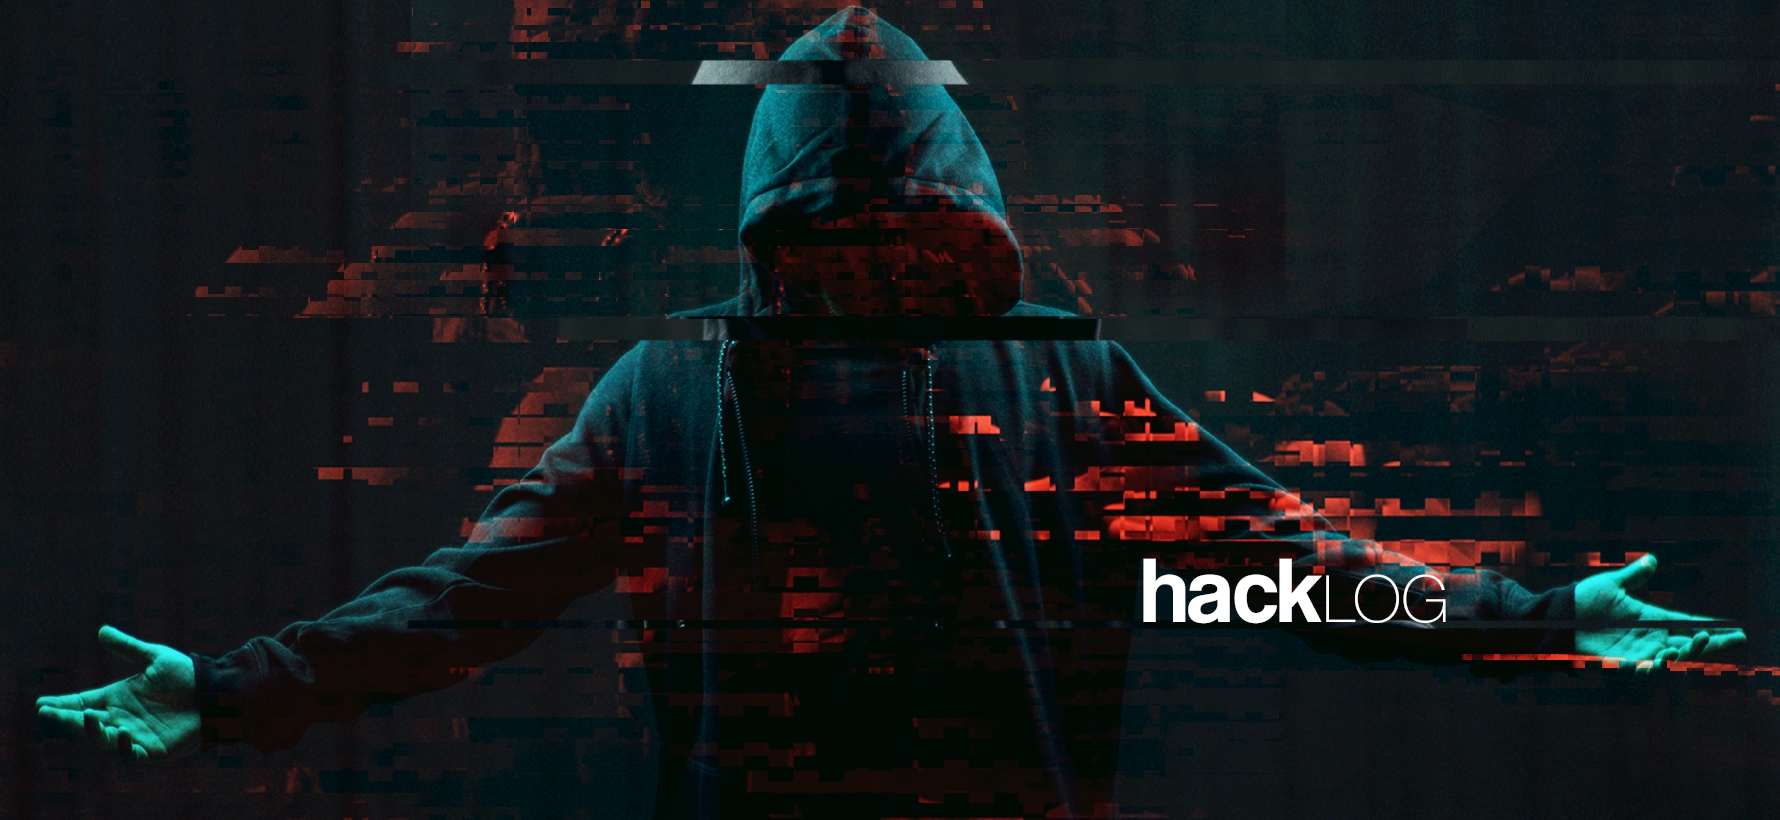 Hacklog: Volume 2, il corso di hacking più seguito in Italia ritorna su IndieGogo